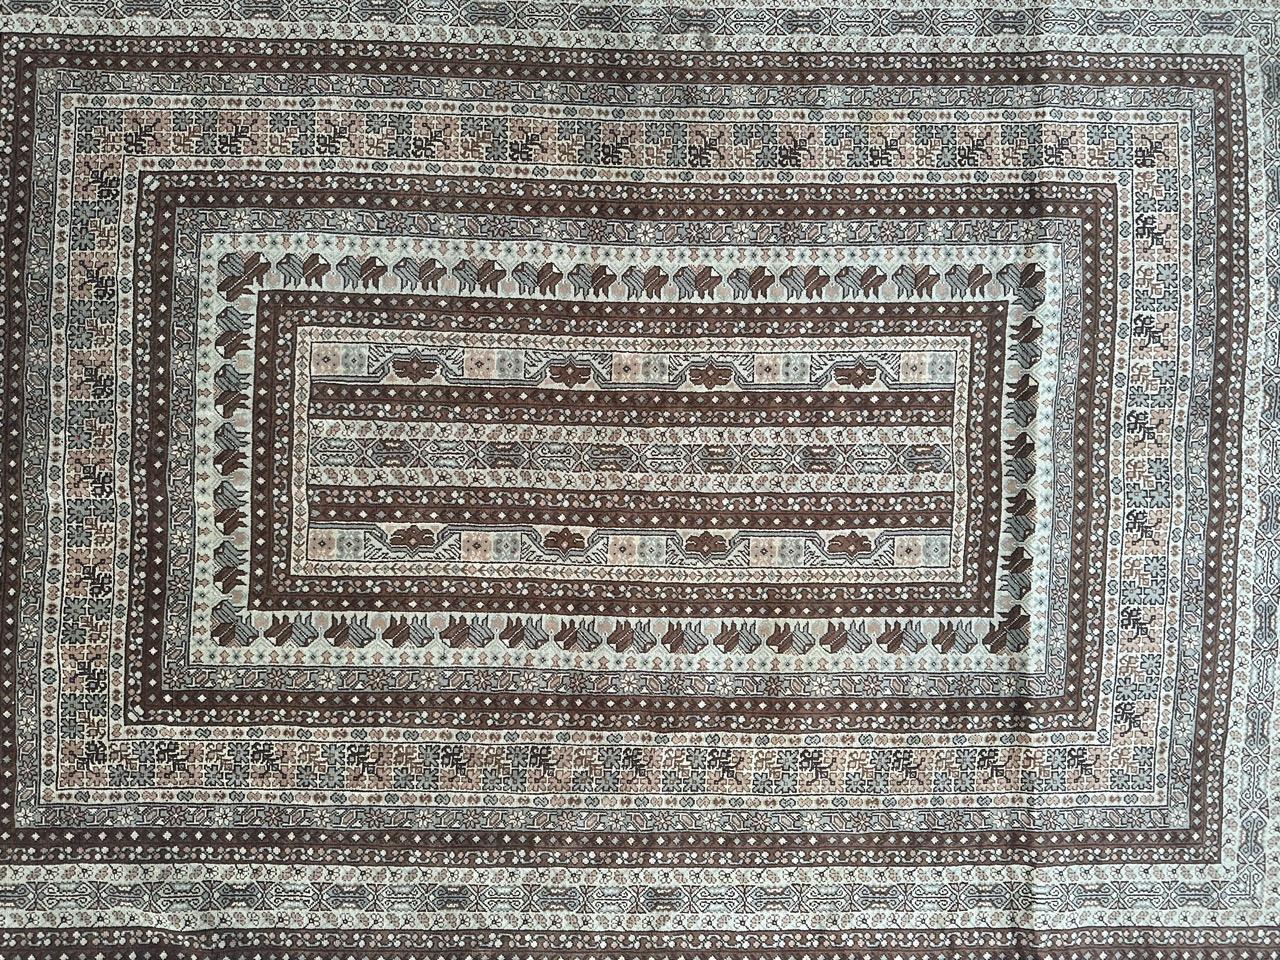 Schöner tunesischer Teppich aus der Mitte des 20. Jahrhunderts, sorgfältig handgewebt aus Wolle auf Baumwolle, mit komplizierten geometrischen und Stammesmustern in schönen Farben. Dieser Teppich ist mit seinem geometrischen Design, den zentrierten